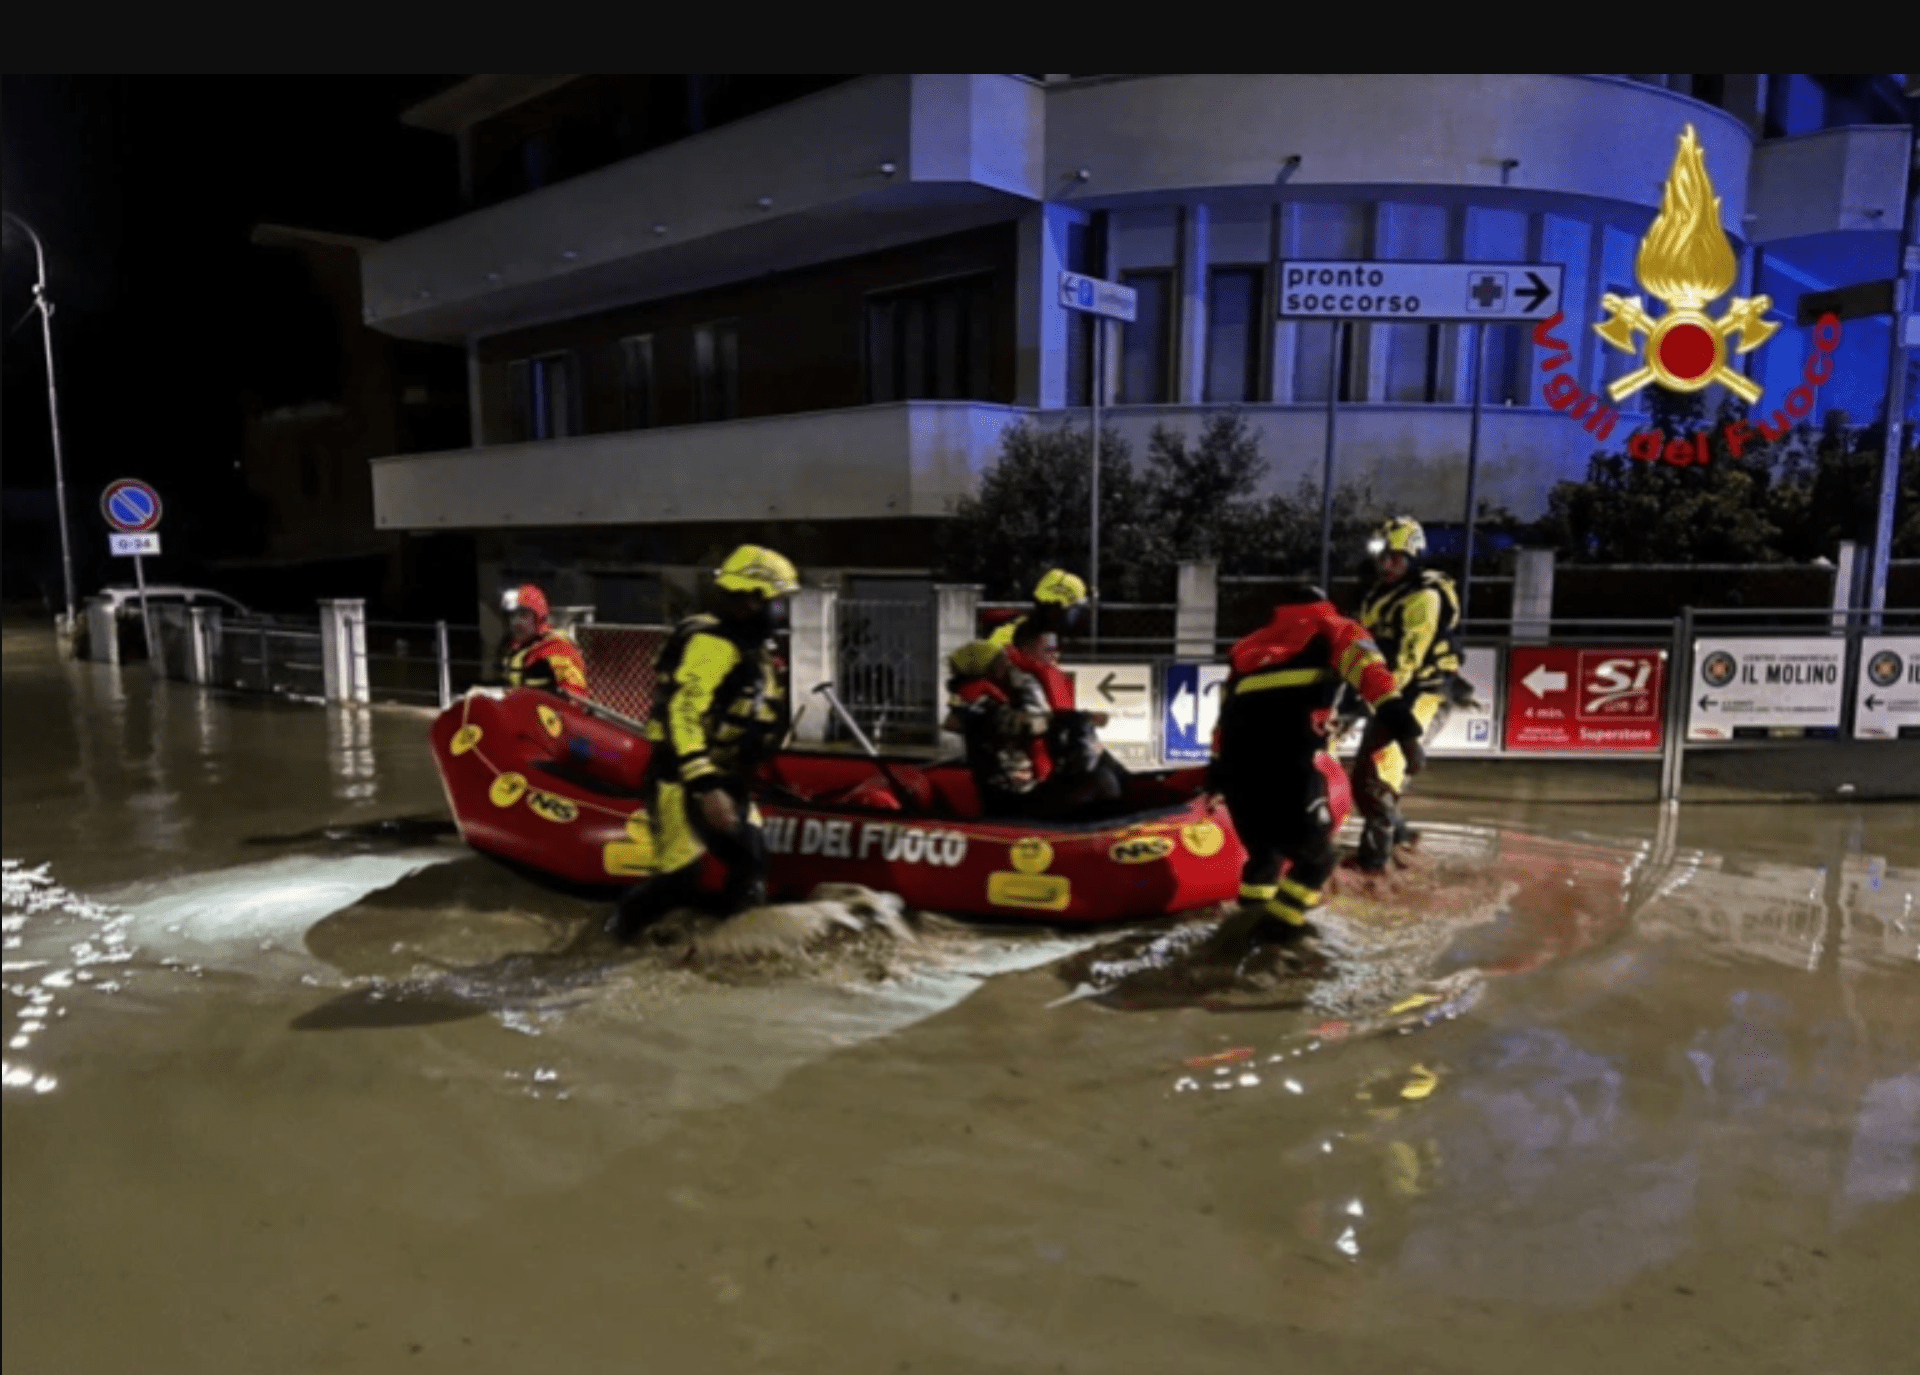 سیل ناگهانی بر اثر بارش شدید باران در شرق ایتالیا جان 10 نفر را گرفت